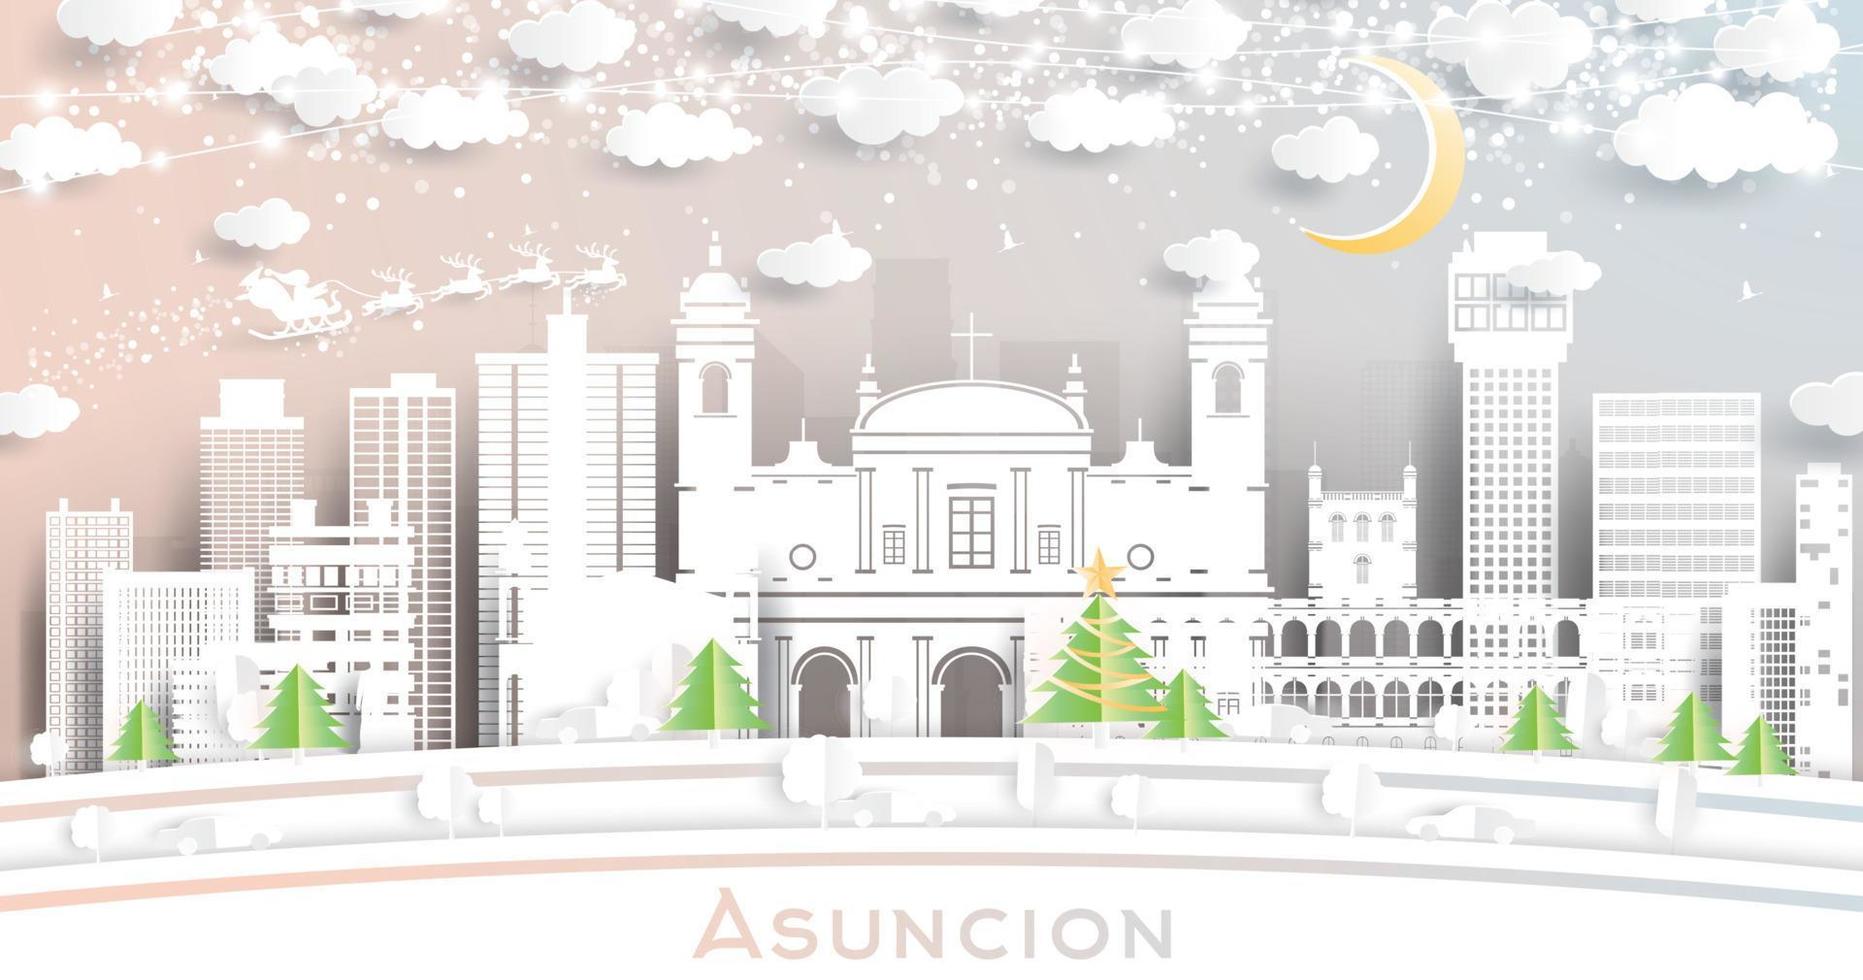 asuncion paraguay city skyline im papierschnittstil mit schneeflocken, mond und neongirlande. vektor